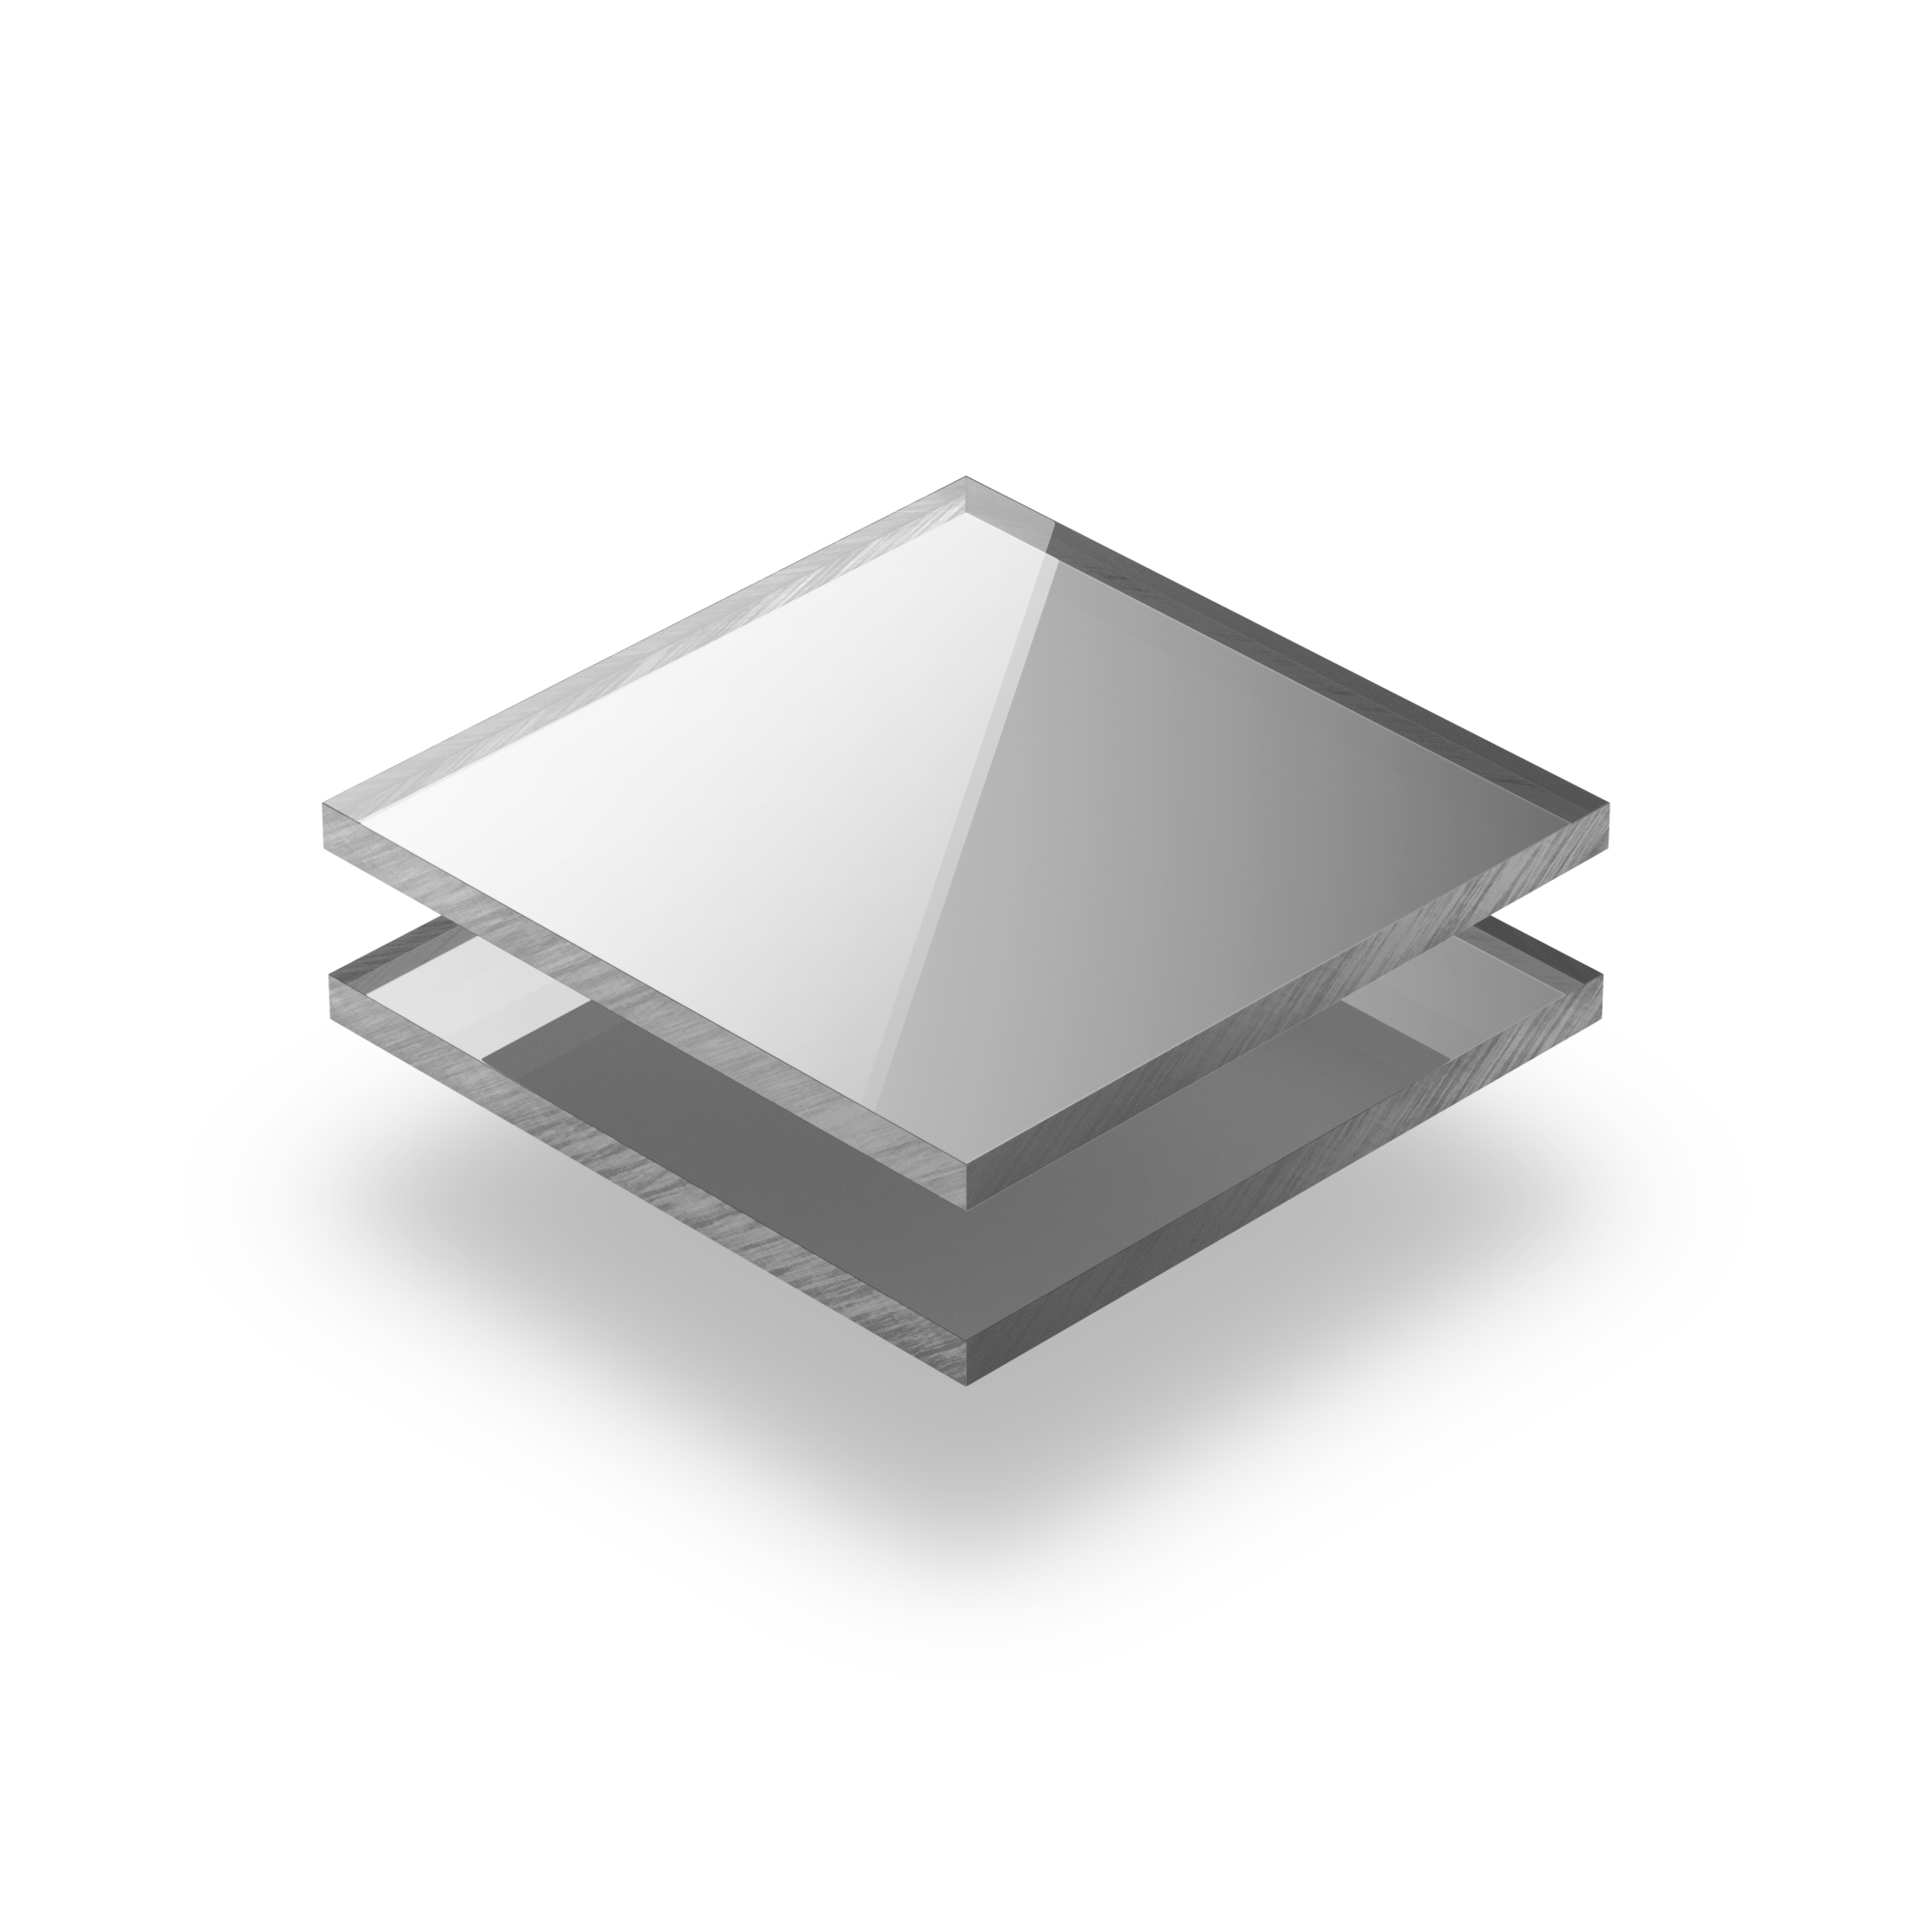 Plaque Plexigglas miroir or 3 mm rond Diamètre 100 mm